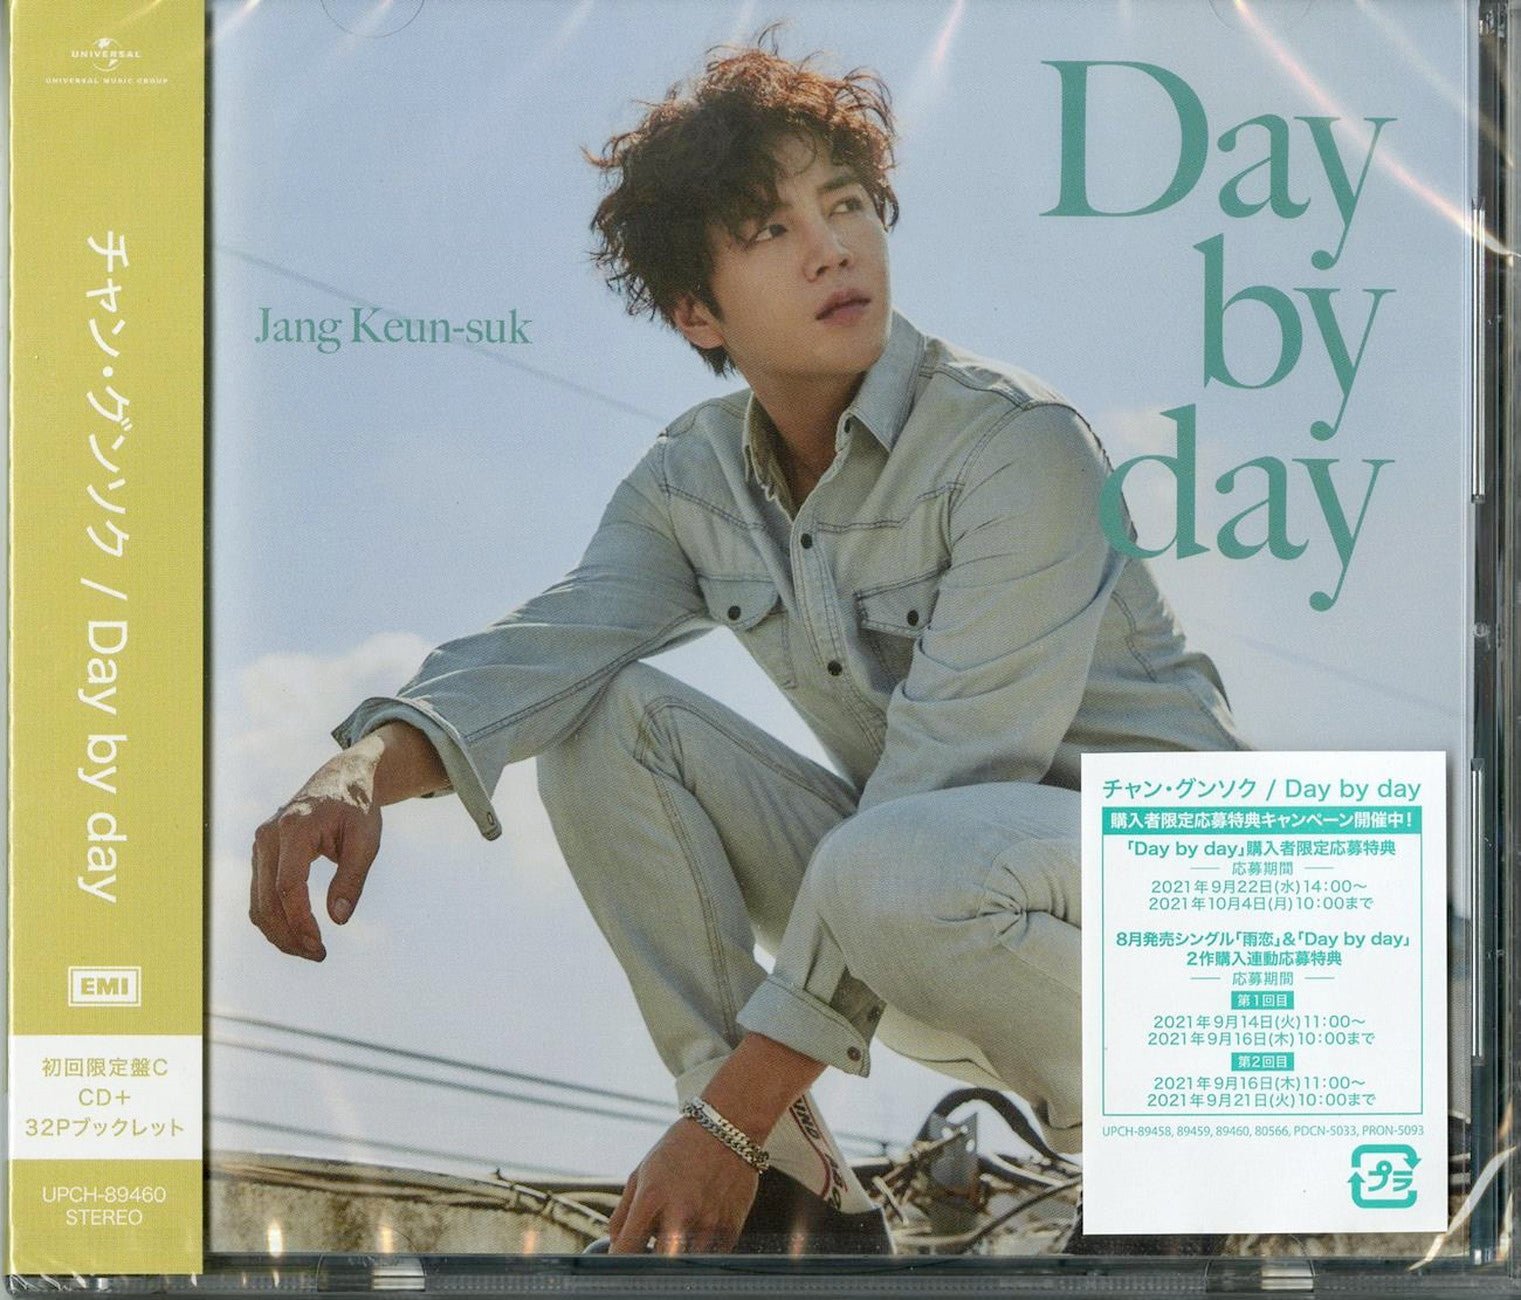 CD Shop - SUK, JANG KEUN DAY BY DAY